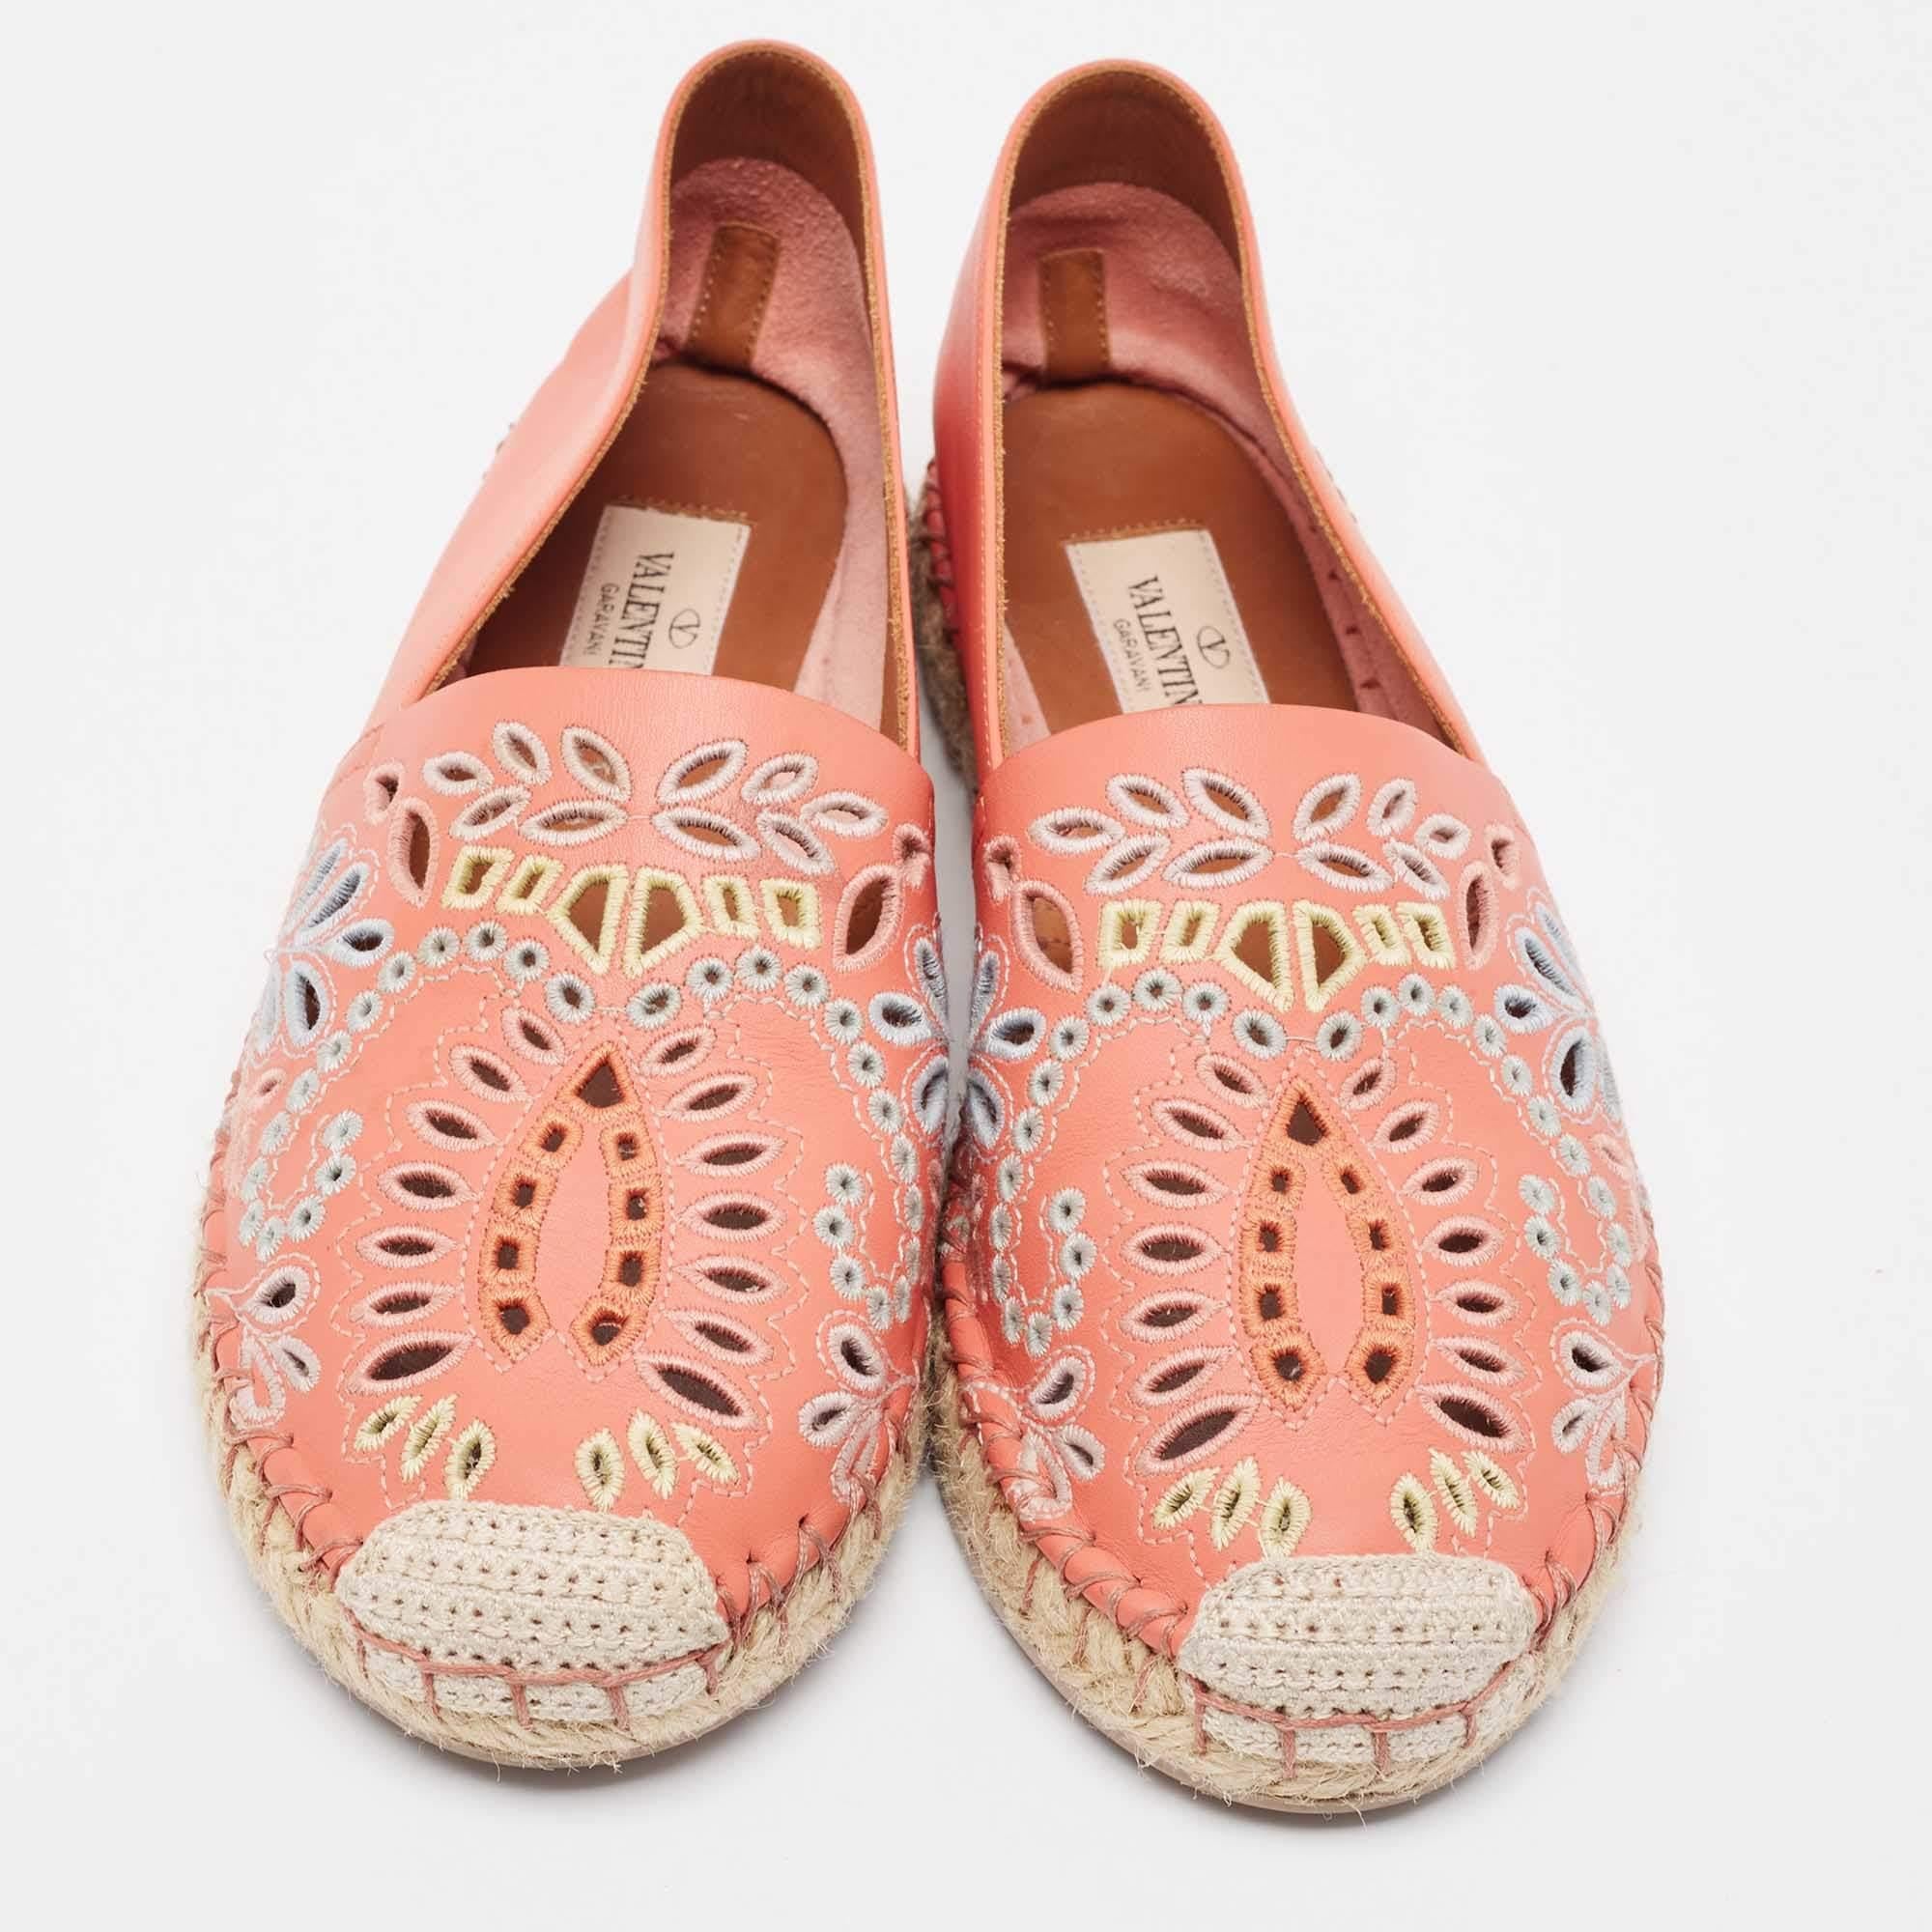 Diese Espadrilles für Damen sind elegant und bequem. Diese vielseitigen Schuhe sind exquisit verarbeitet und verbinden zeitlose Eleganz mit alltäglicher Leichtigkeit.

Enthält: Original-Staubbeutel

